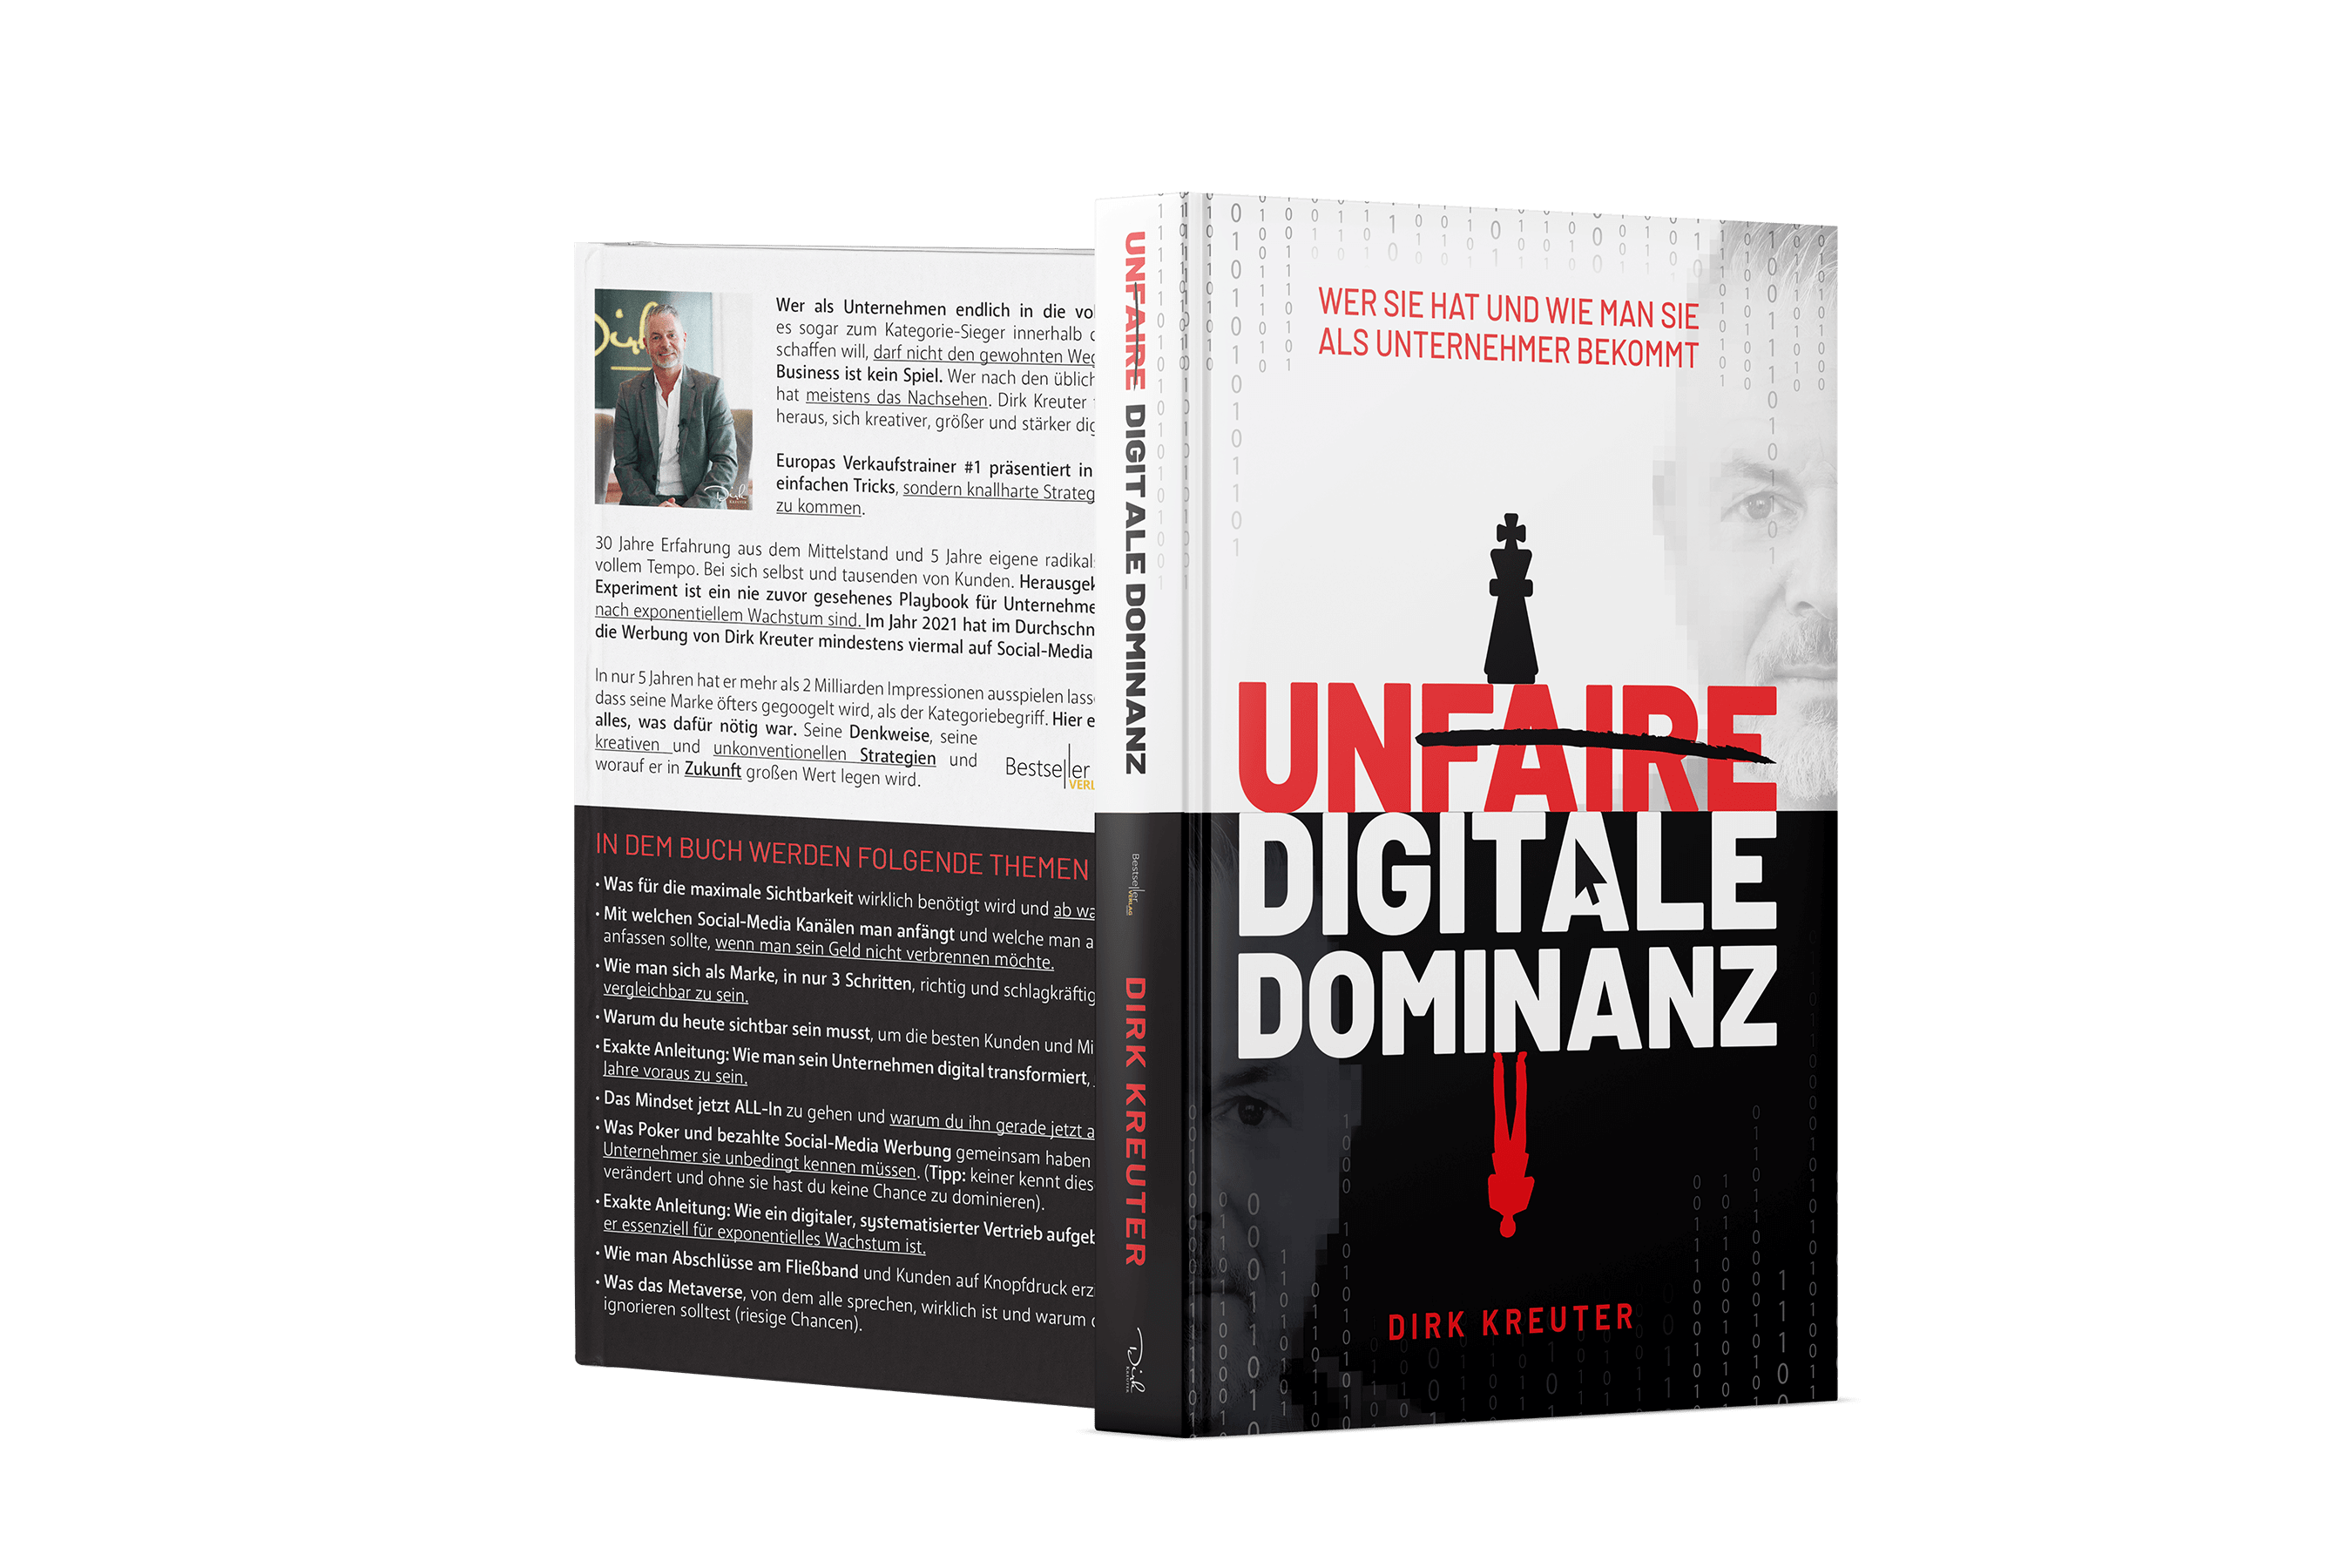 Unfaire digitale Dominanz - Buch von Dirk Kreuter - becomePro